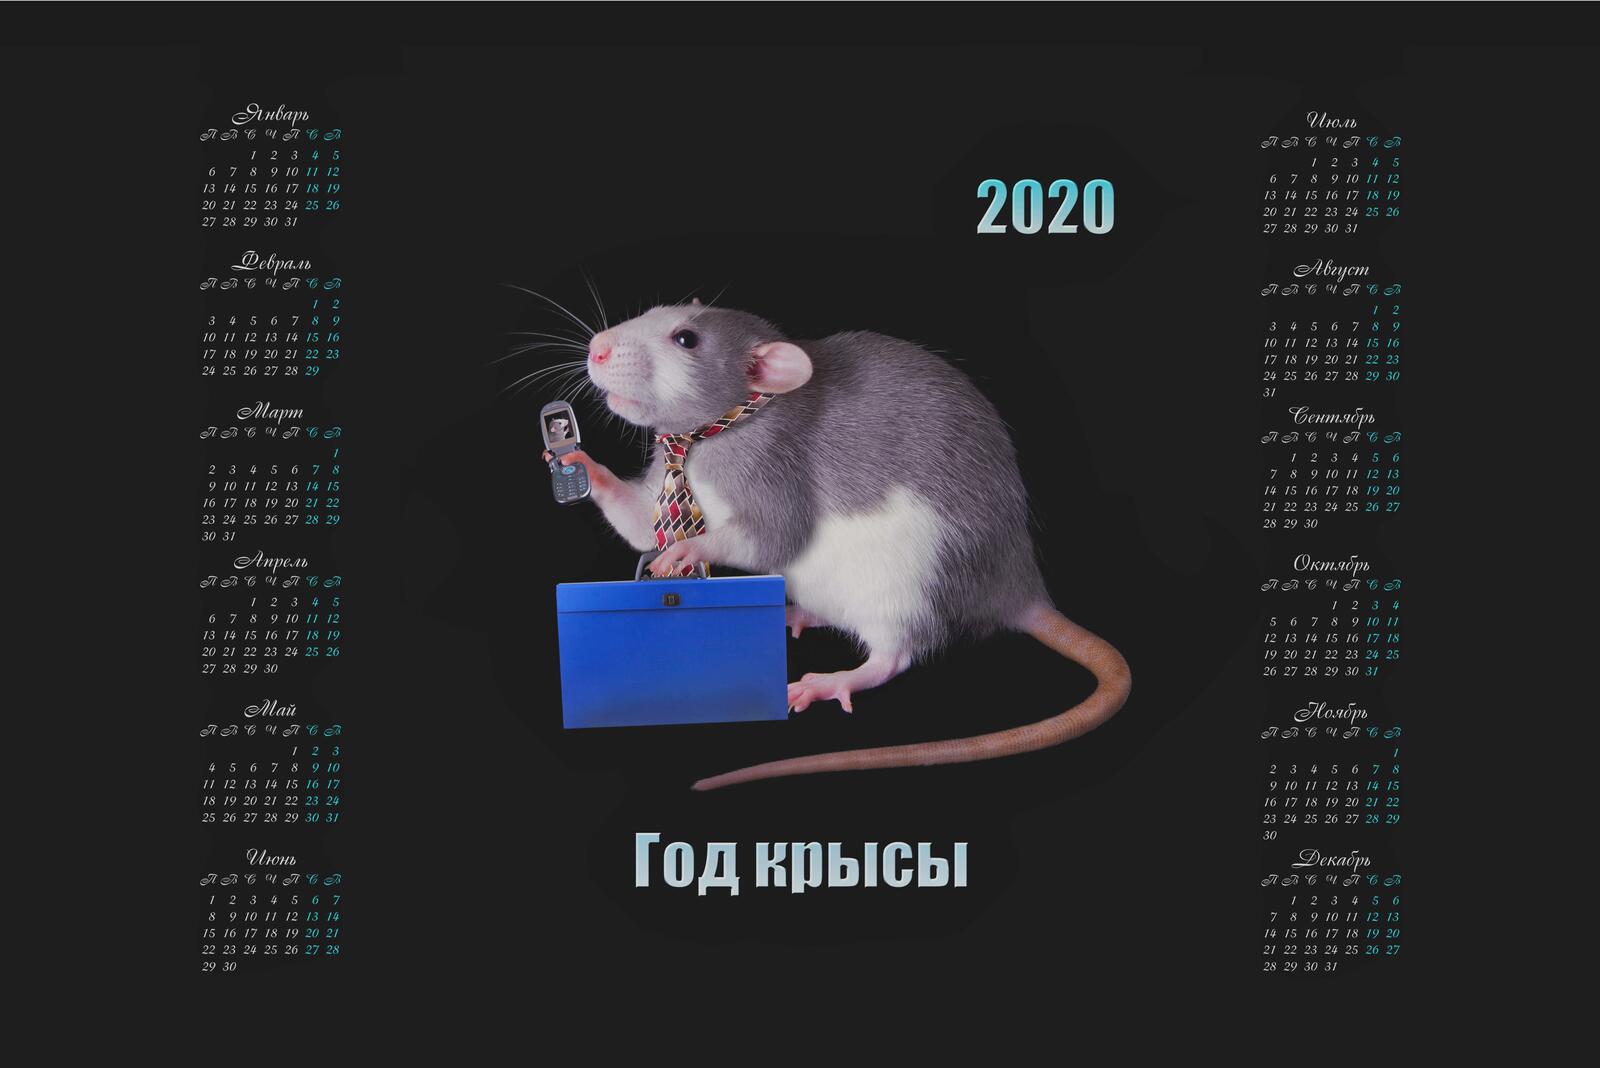 Бесплатное фото Календарь на 2020 год крыса с мобильником